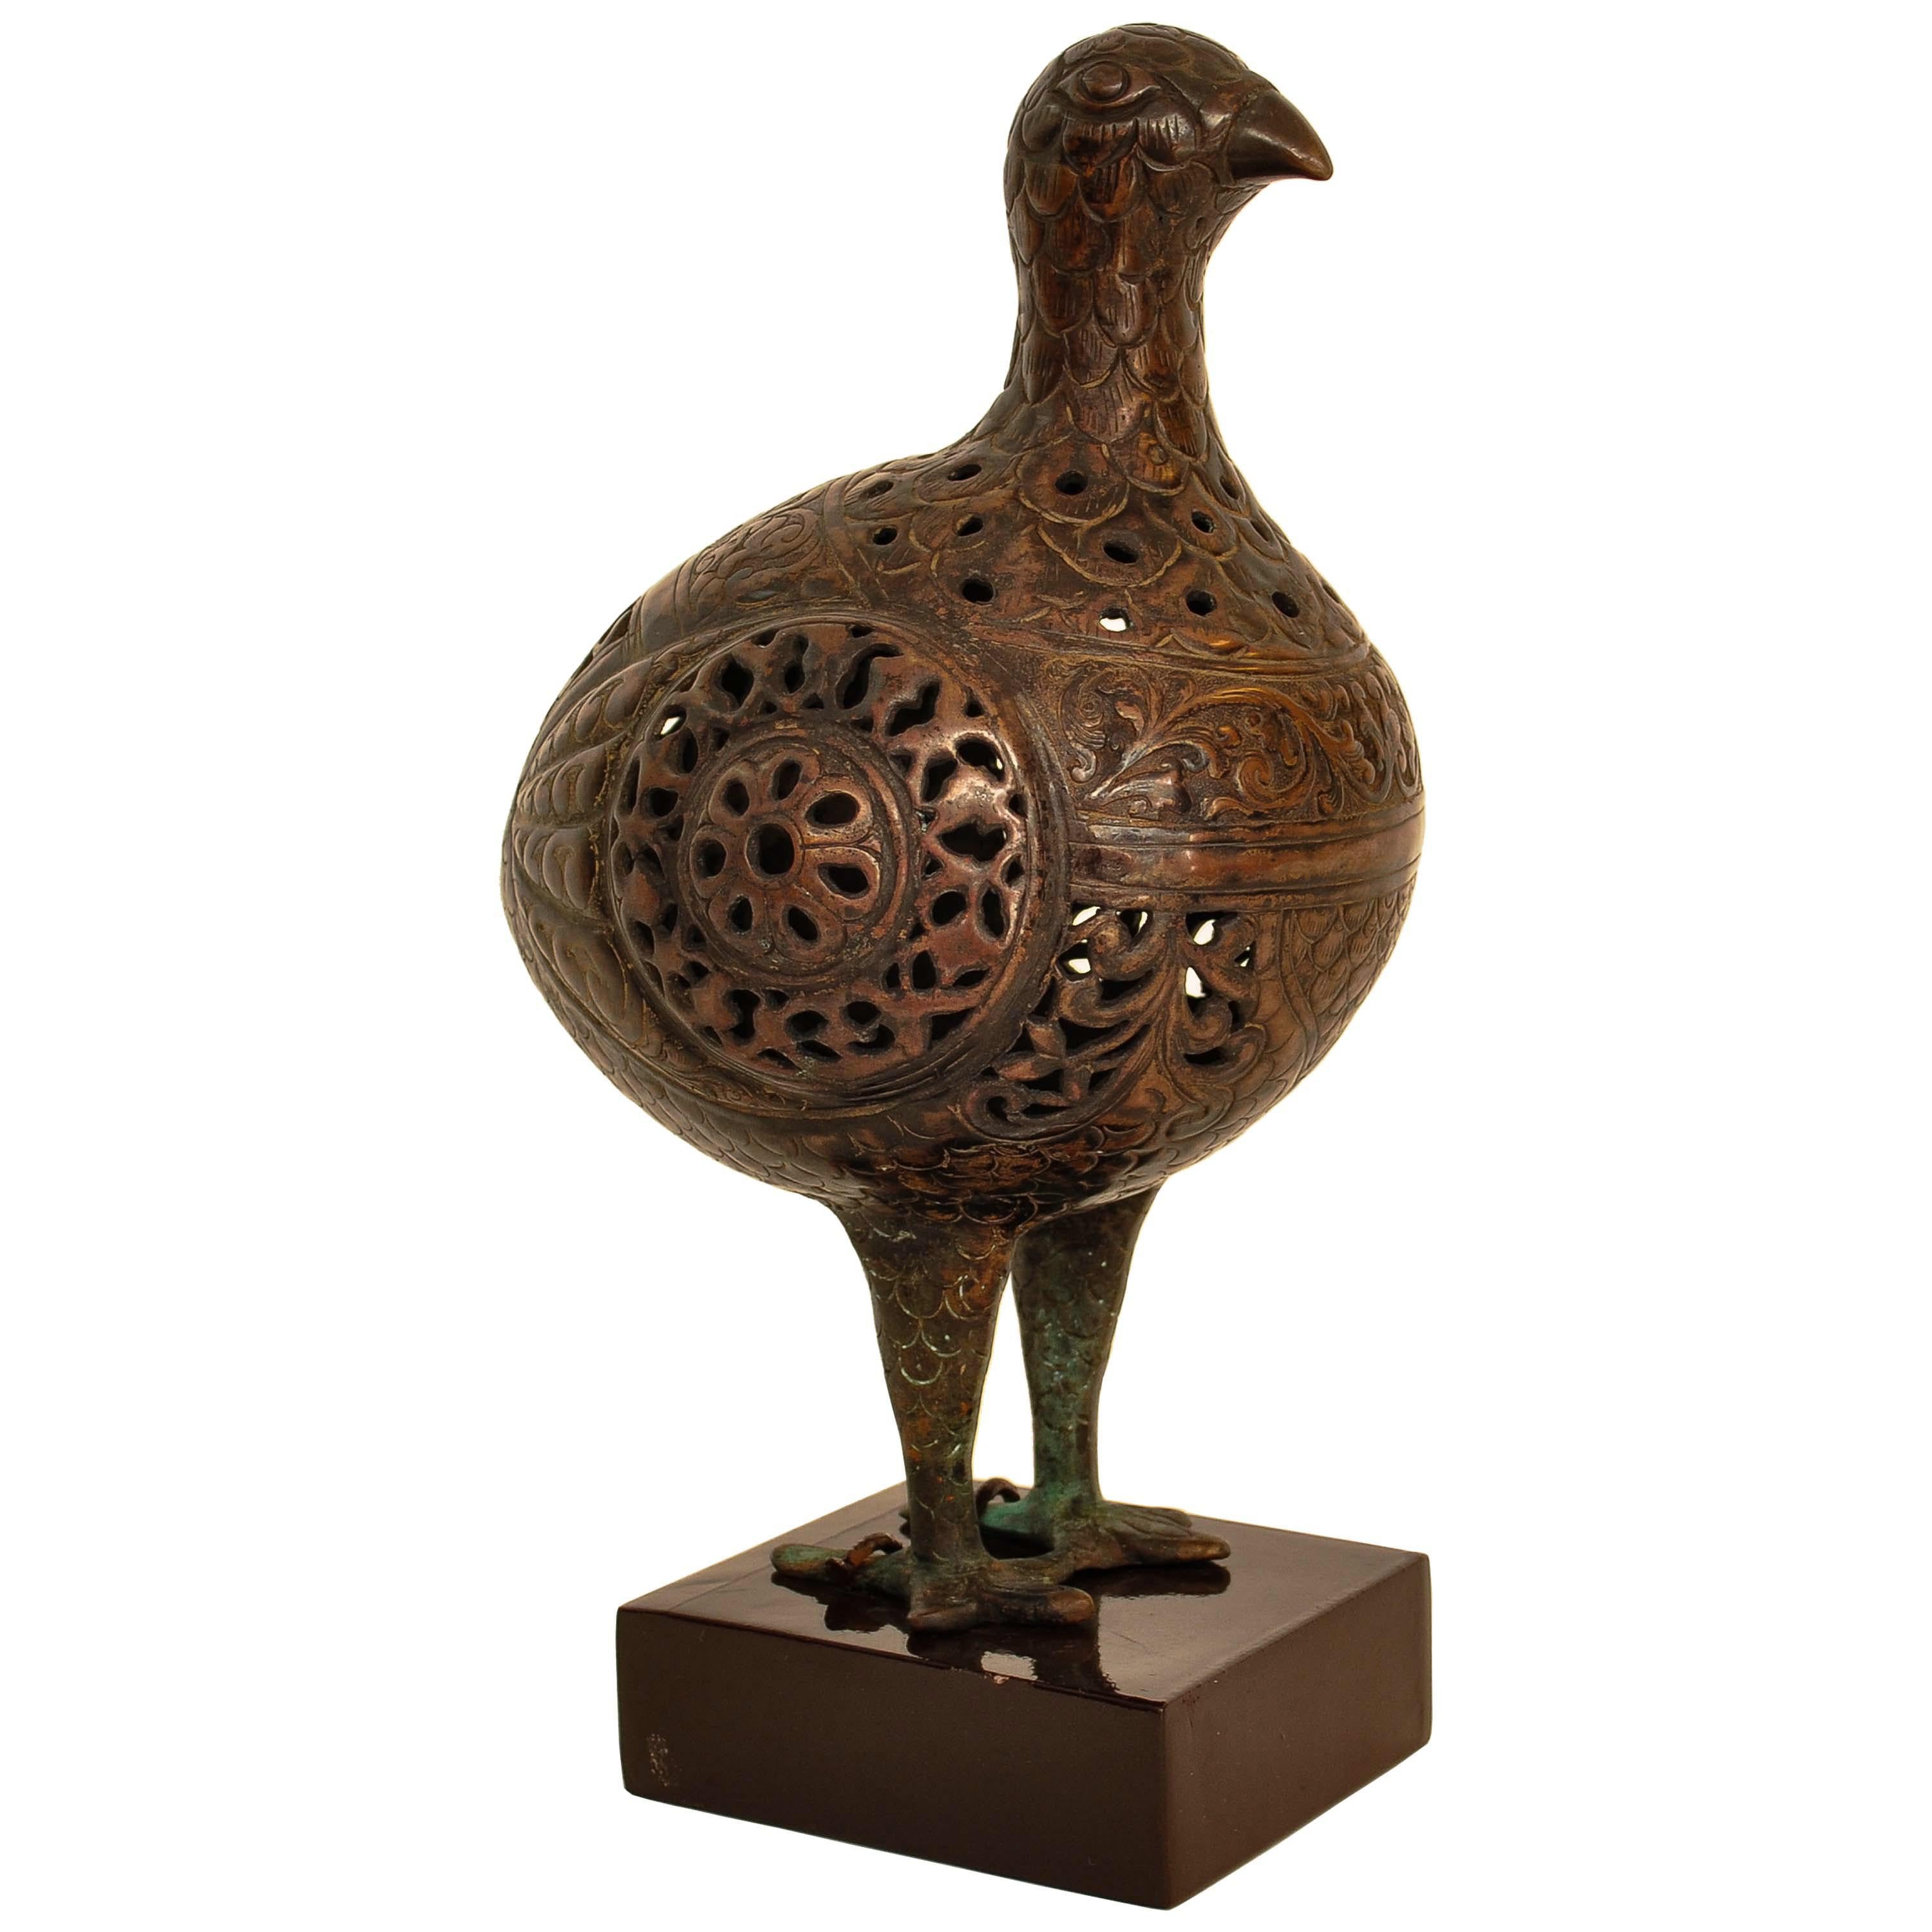 Belle et rare statue d'oiseau en bronze de l'époque seldjoukide, vers 1150, probablement en Perse ou en Asie centrale.
L'oiseau est finement modelé, gravé et ajouré. Ces figurines étaient utilisées comme pomanders ou rafraîchisseurs d'air et étaient